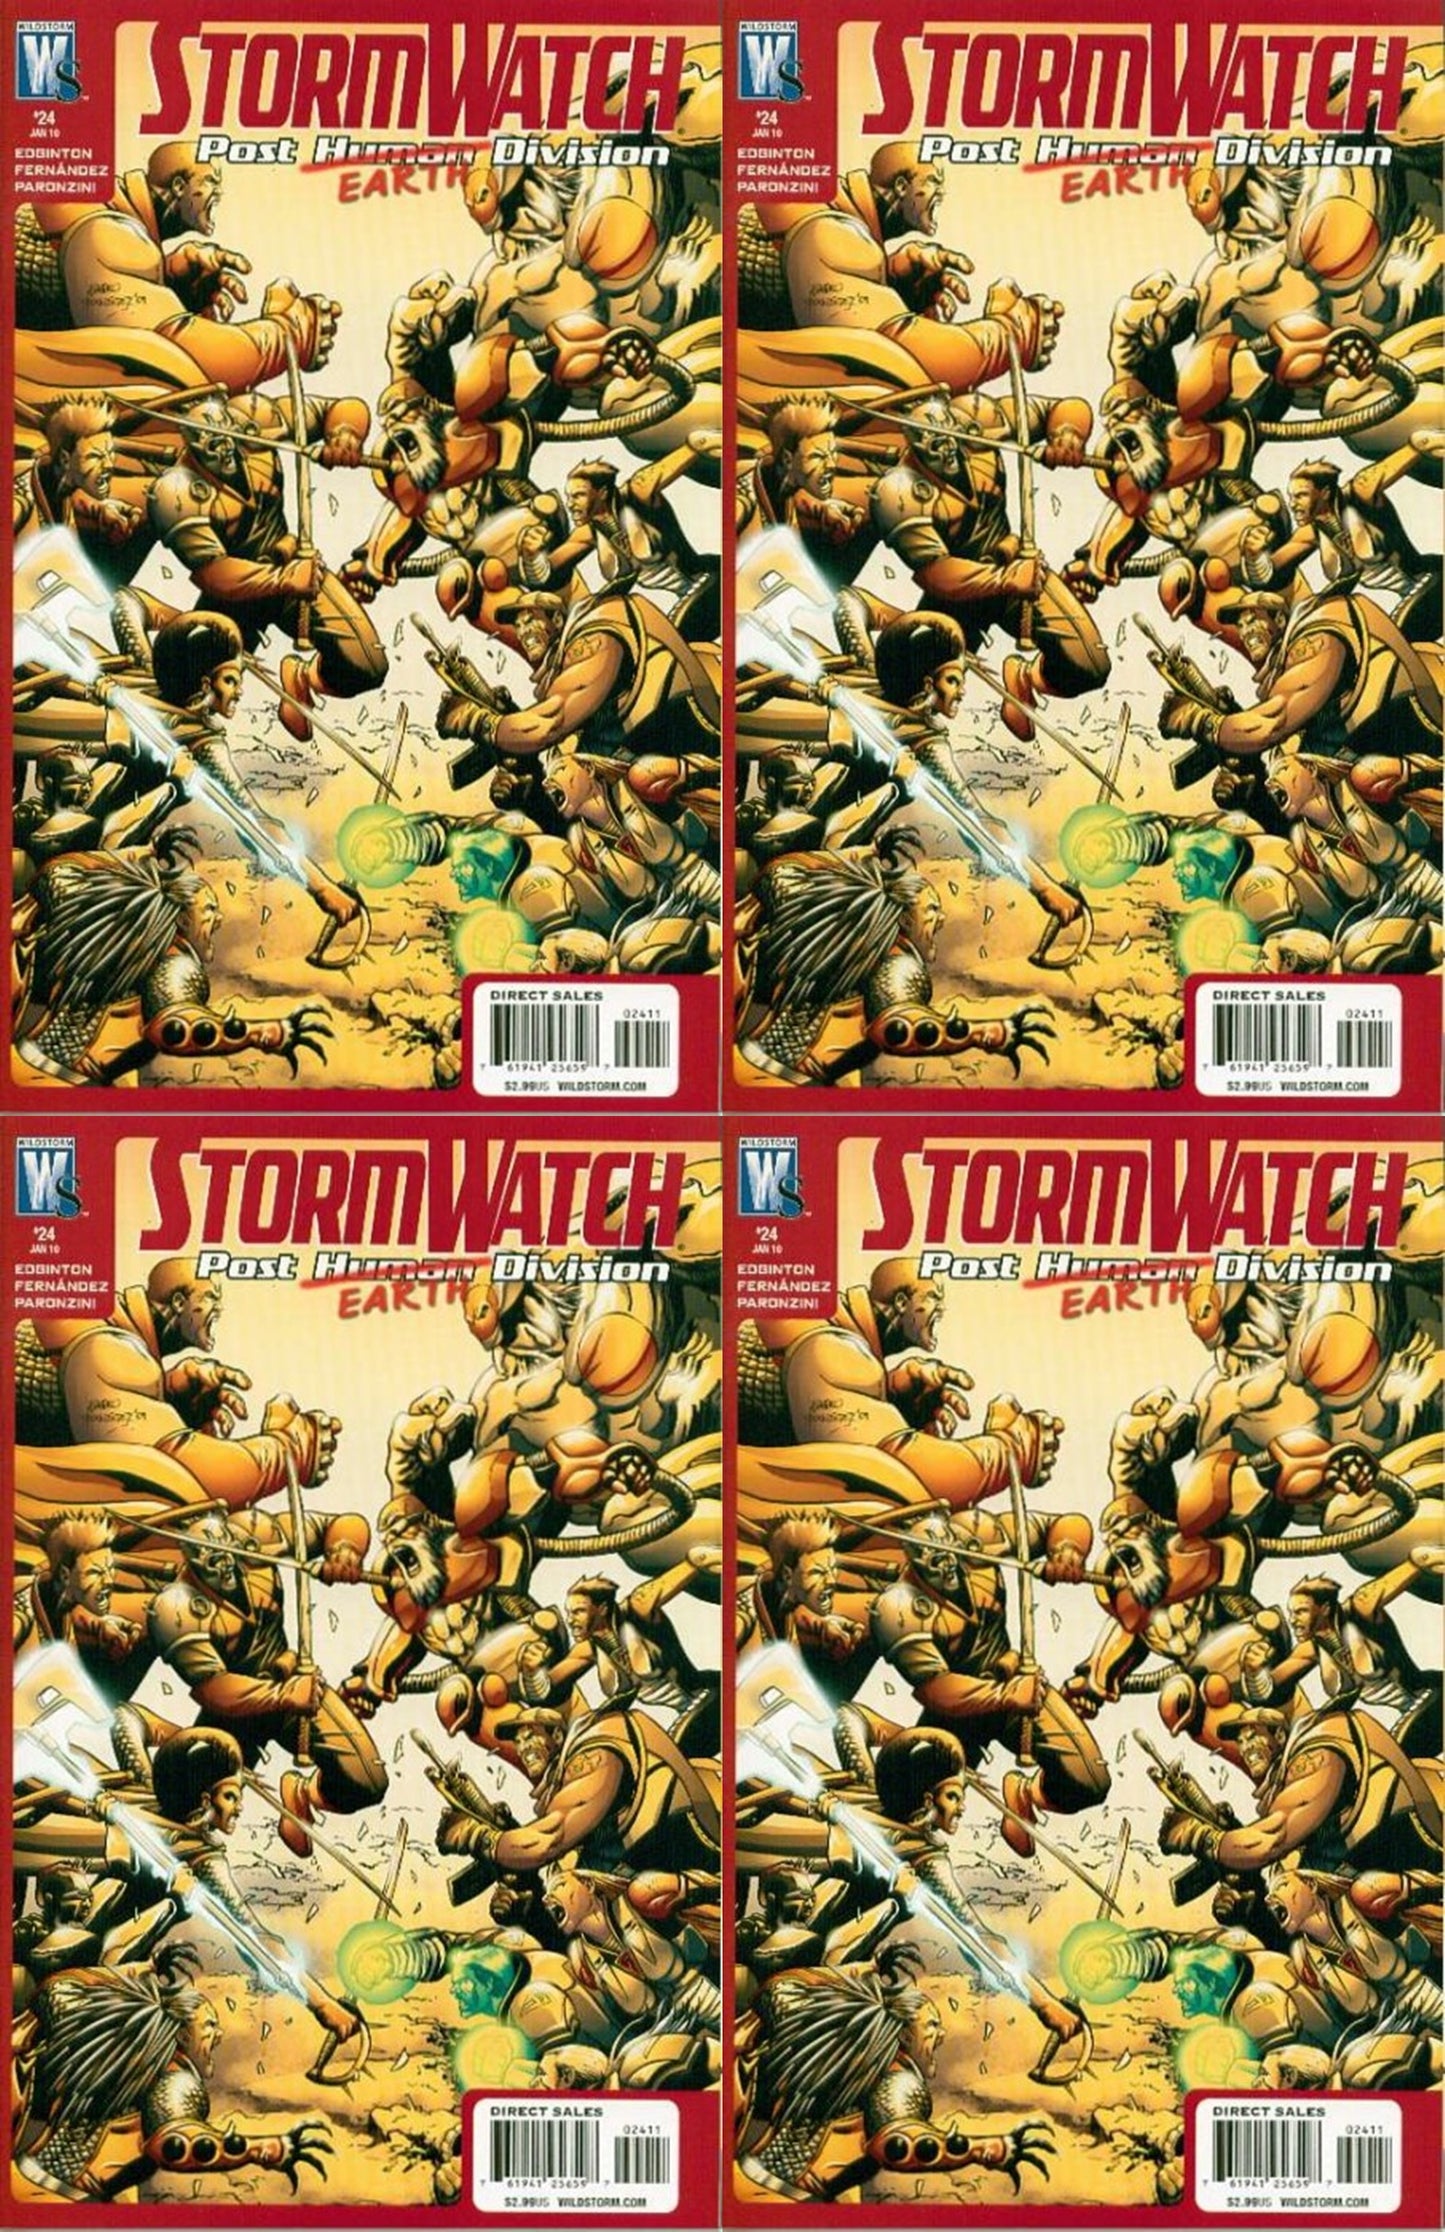 Stormwatch P.H.D. #24 (2007-2009) Wildstorm Comics - 4 Comics